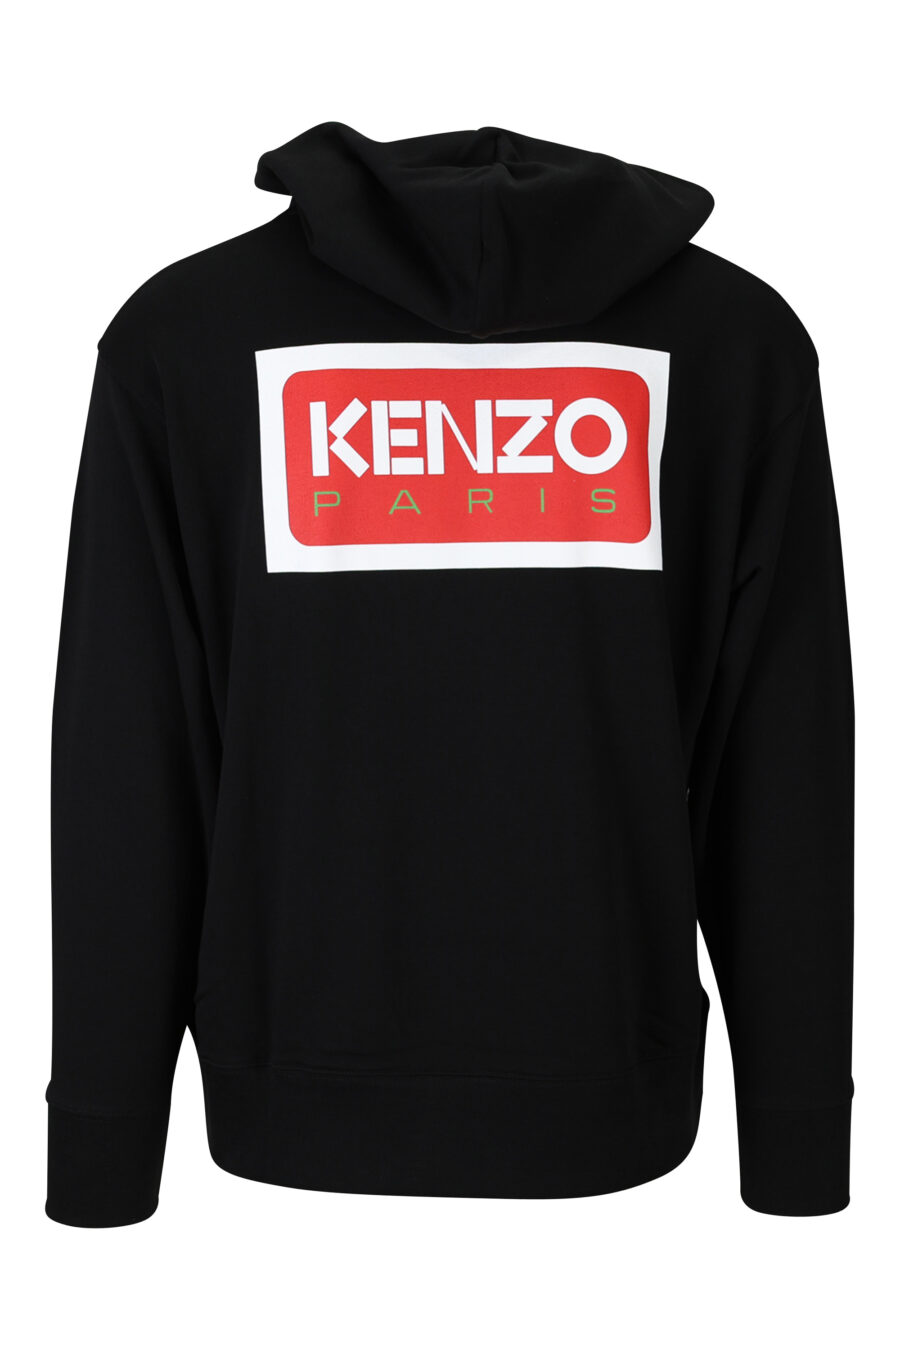 Black oversize sweatshirt with hood and "kenzo paris" logo - 3612230515673 1